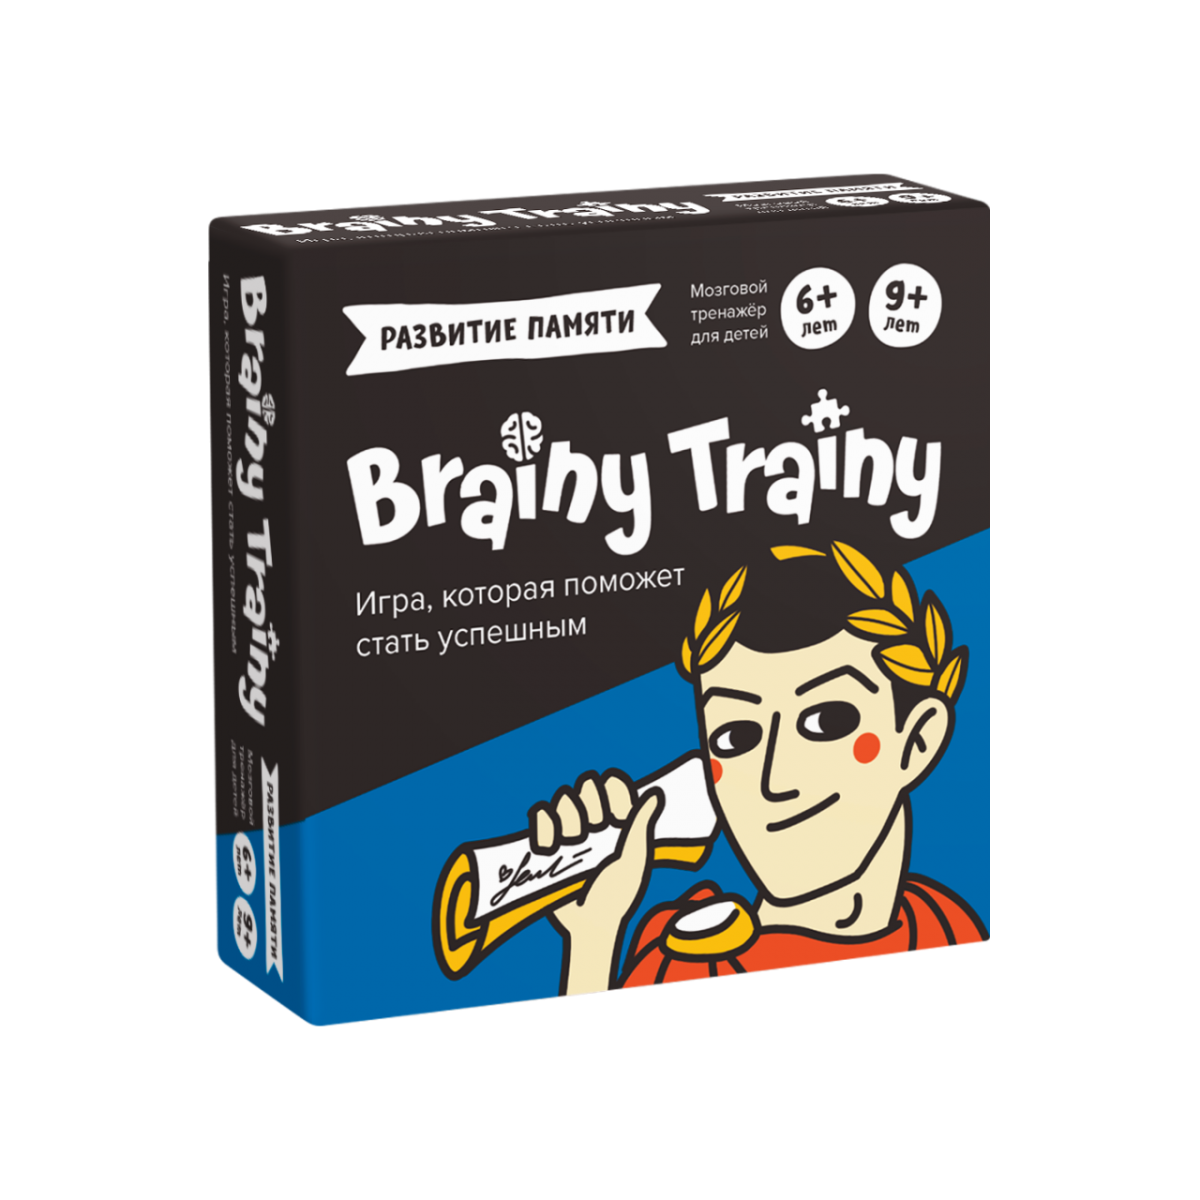 Brain puzzle game. Игра-головоломка Brainy Trainy. Развивающие головоломки Brainy Trainy. Развивающие головоломки Brainy Trainy ум461 развитие памяти. Игра-головоломка Brainy Trainy ум268 программирование.